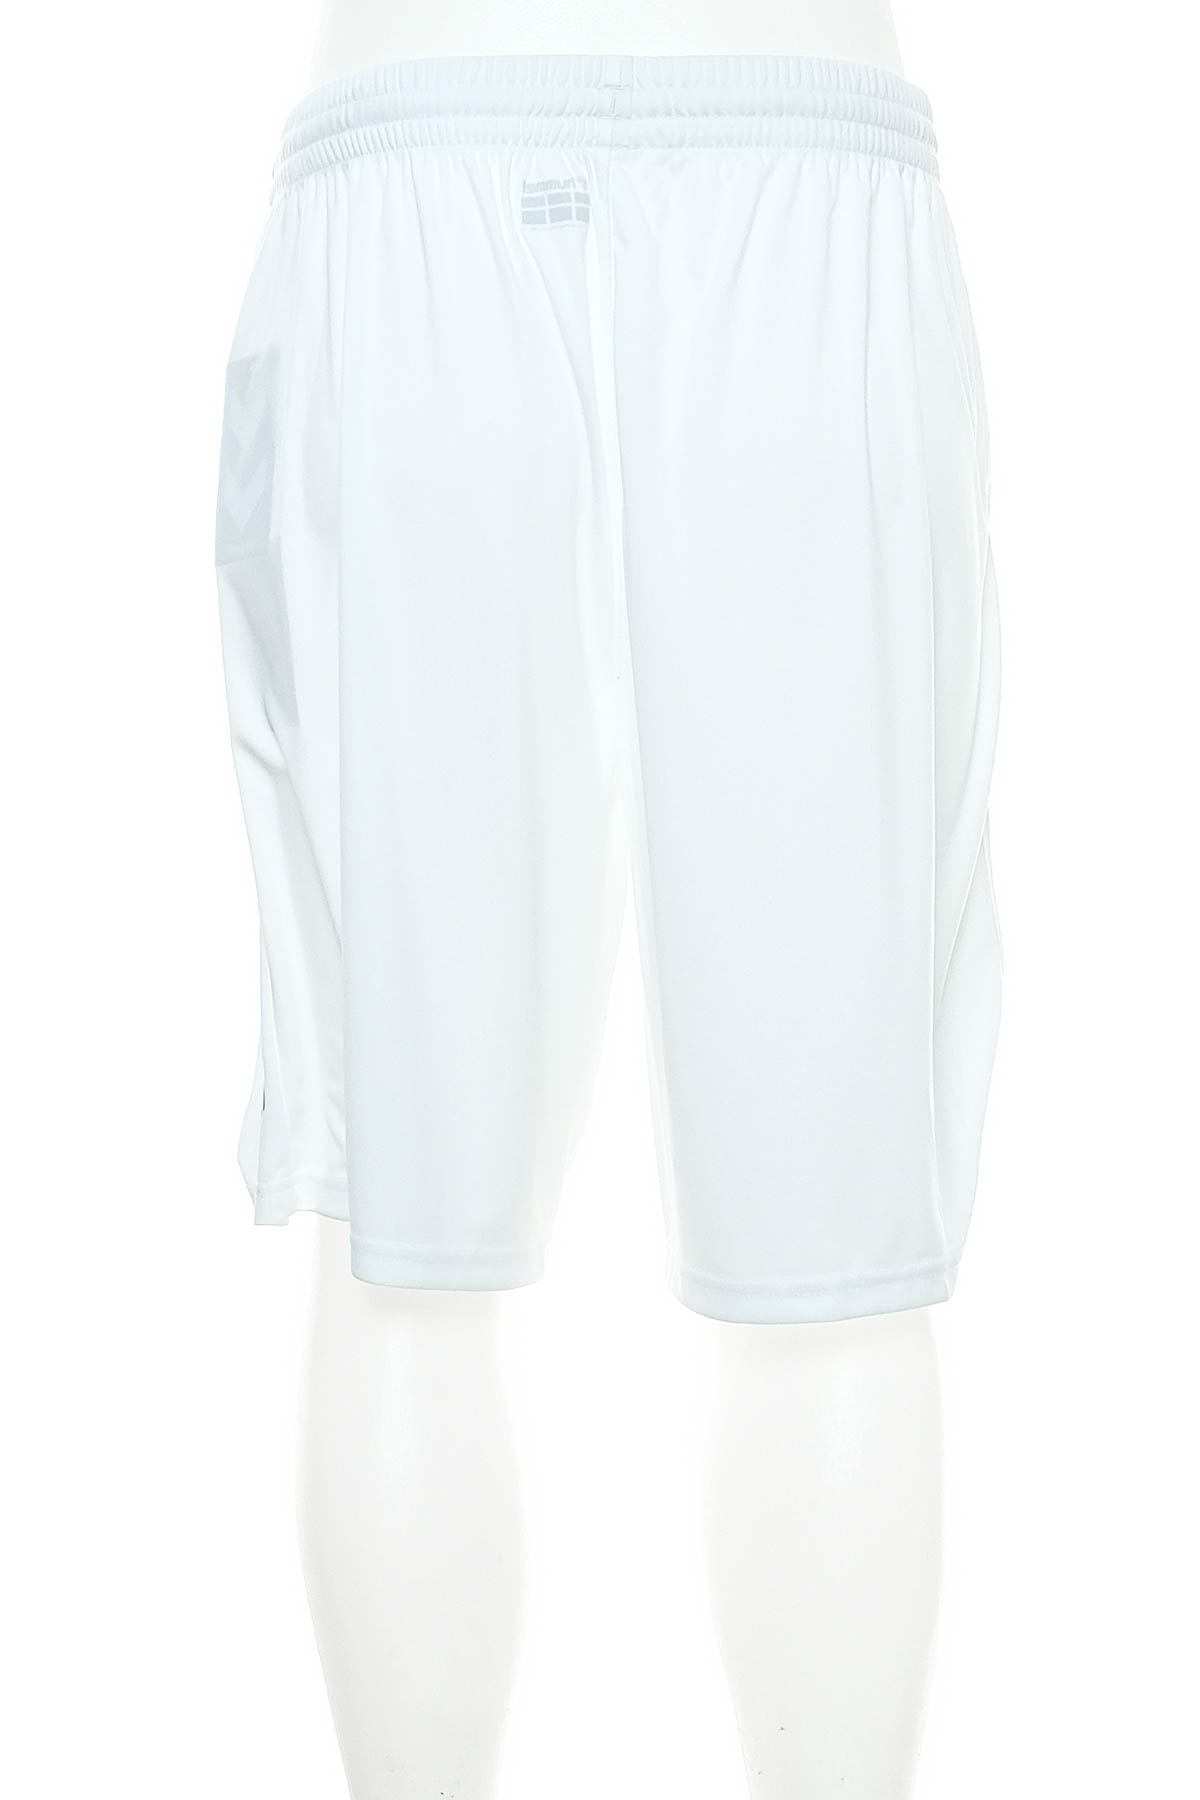 Men's shorts - Hummel - 1